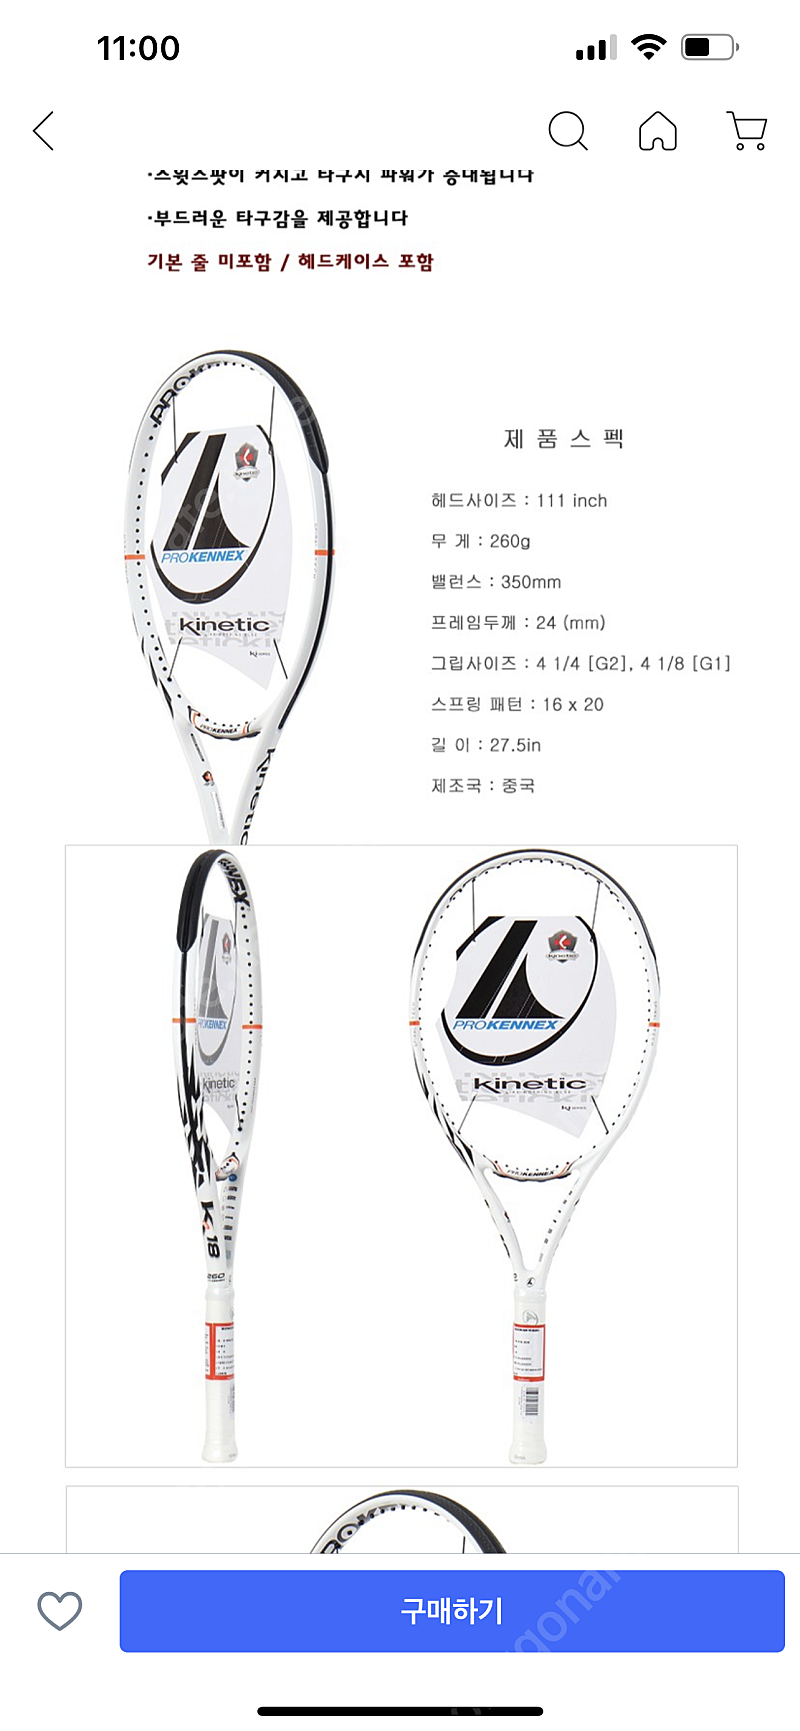 프로케넥스 PROKENNEX KI18 테니스라켓 2자루